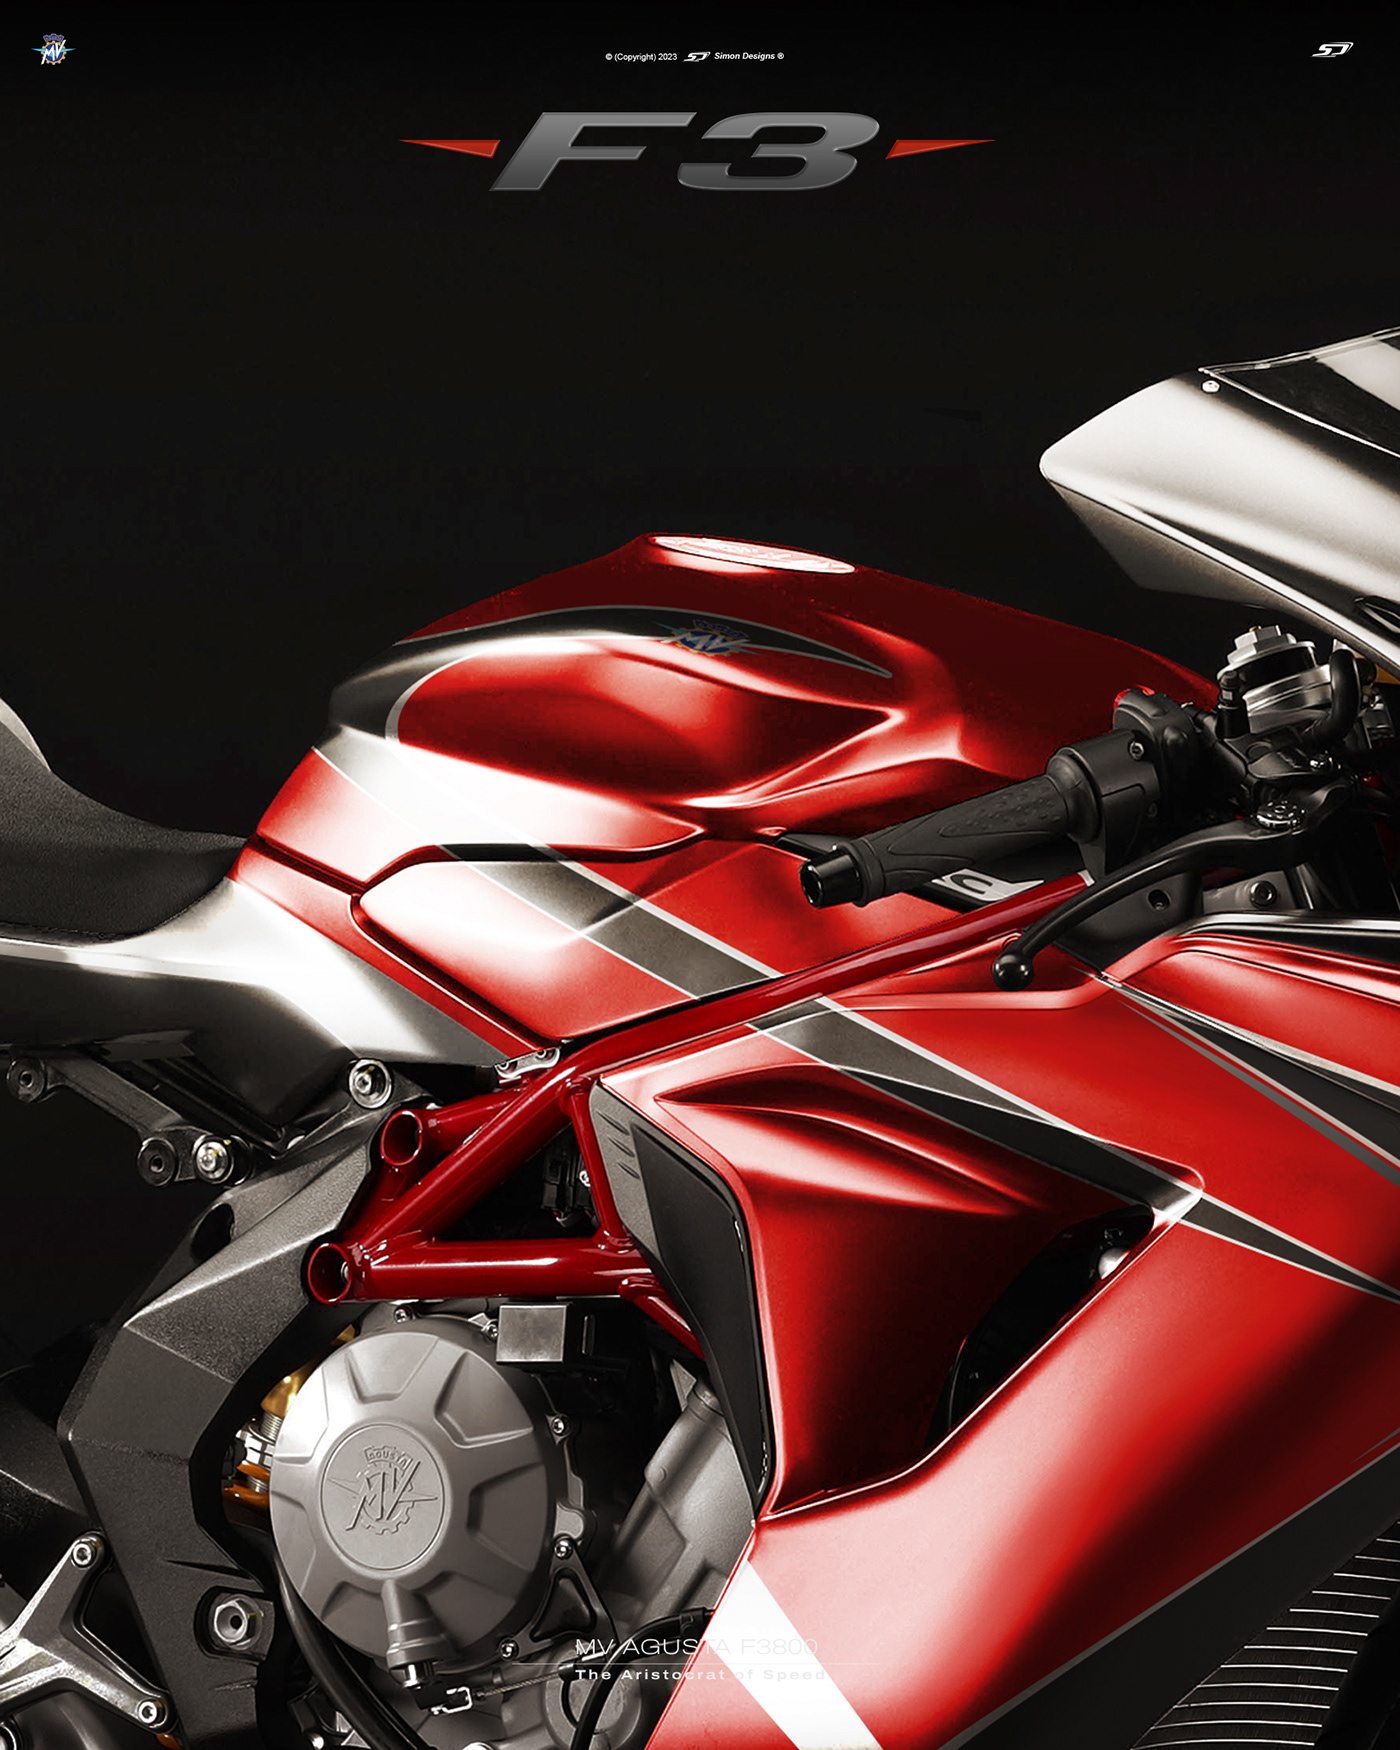 Simon Designs designer motorcycle art mv agusta tailor made MV Agusta F3 simon exclusiva